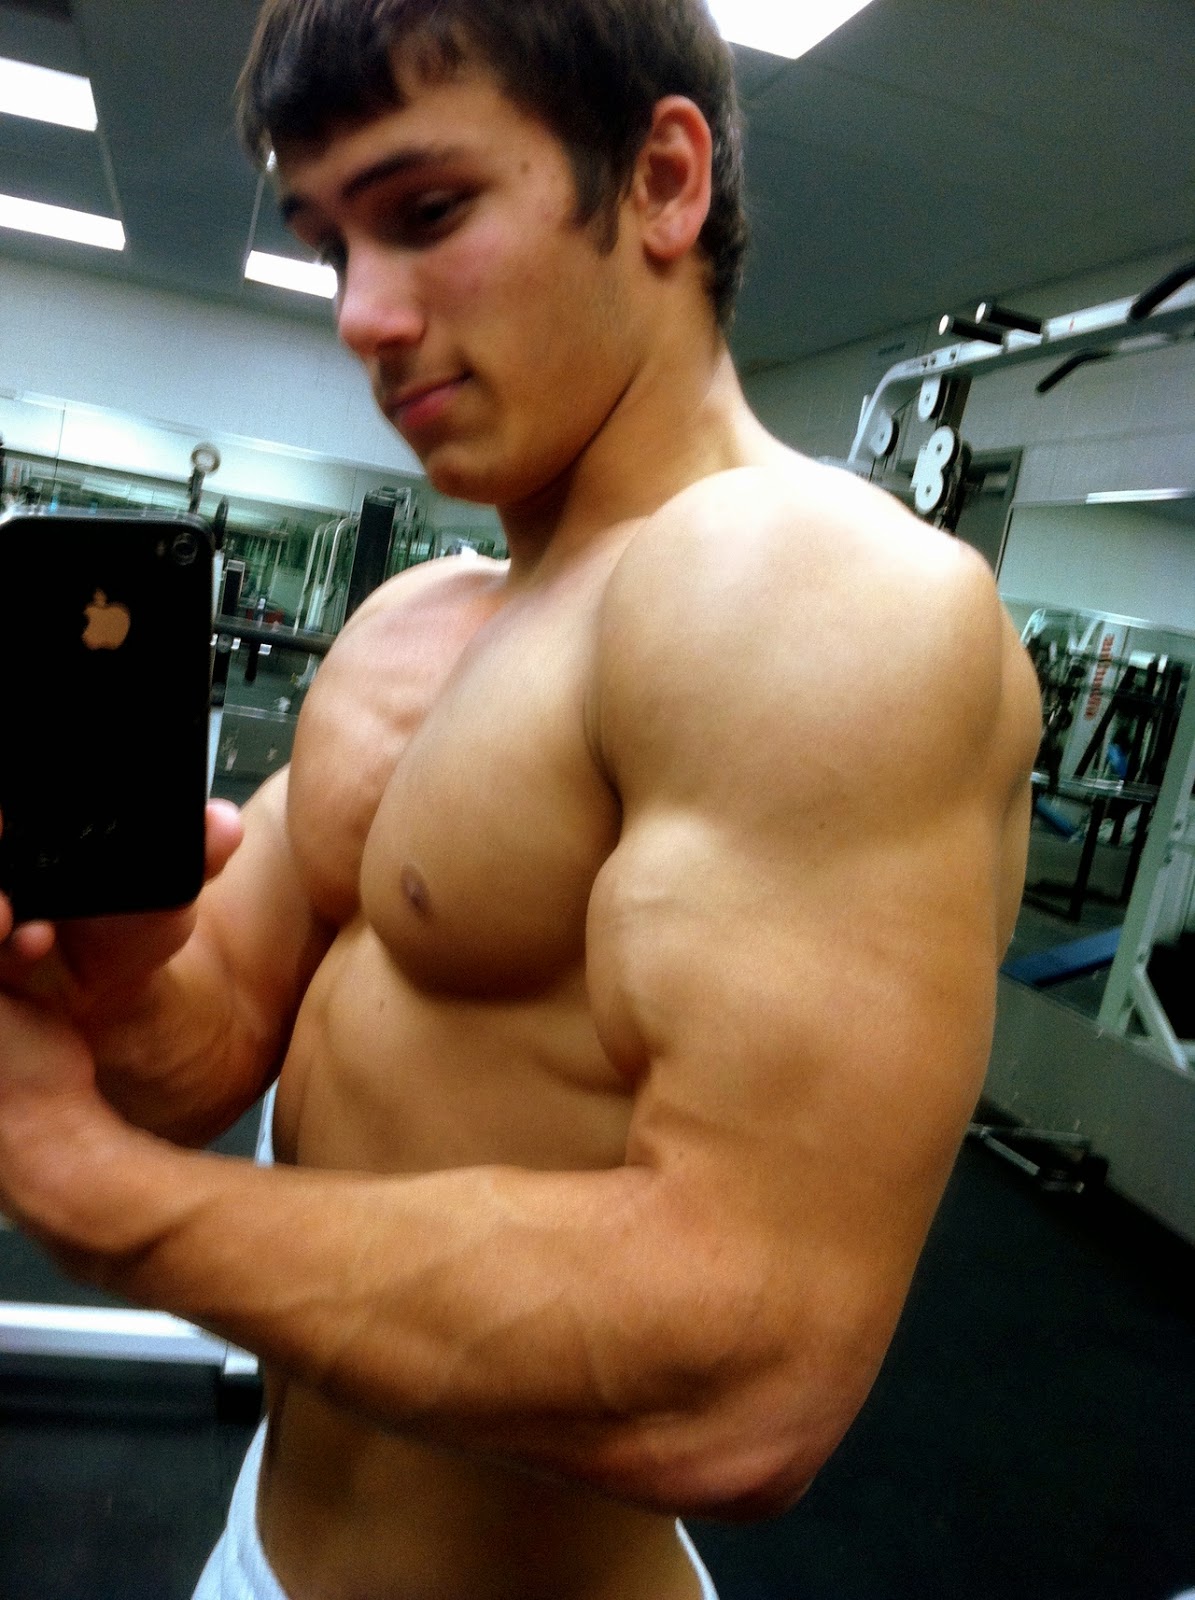 Michael hoffman bodybuilder